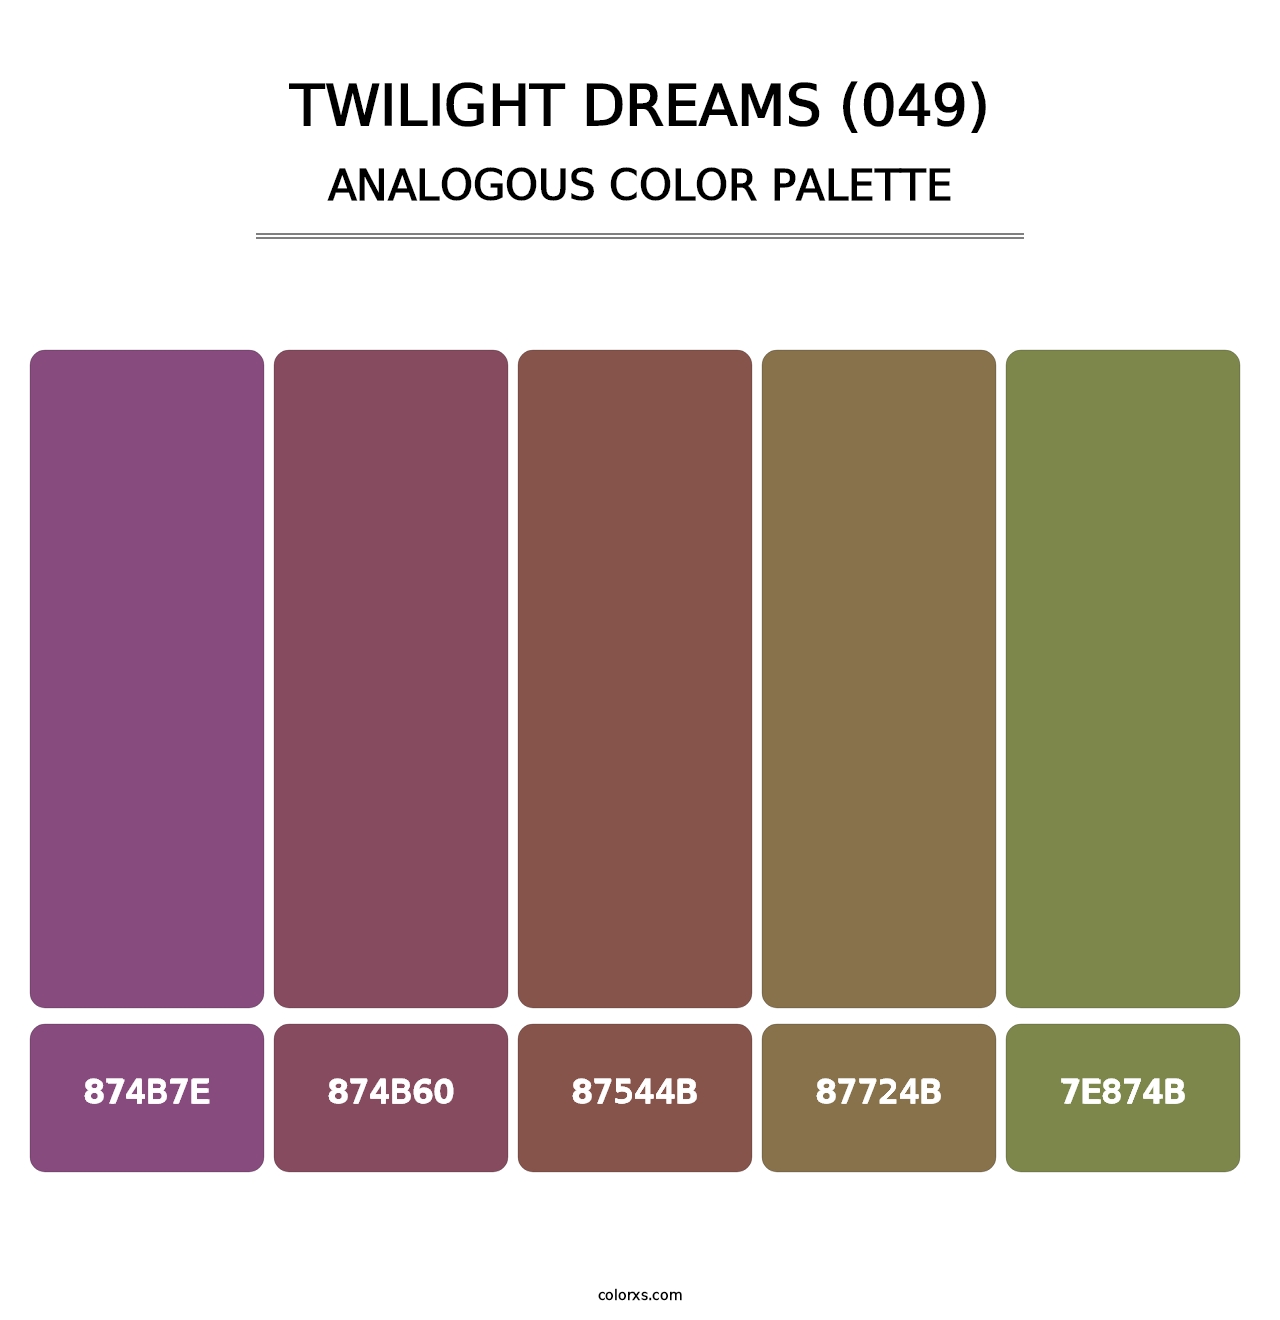 Twilight Dreams (049) - Analogous Color Palette